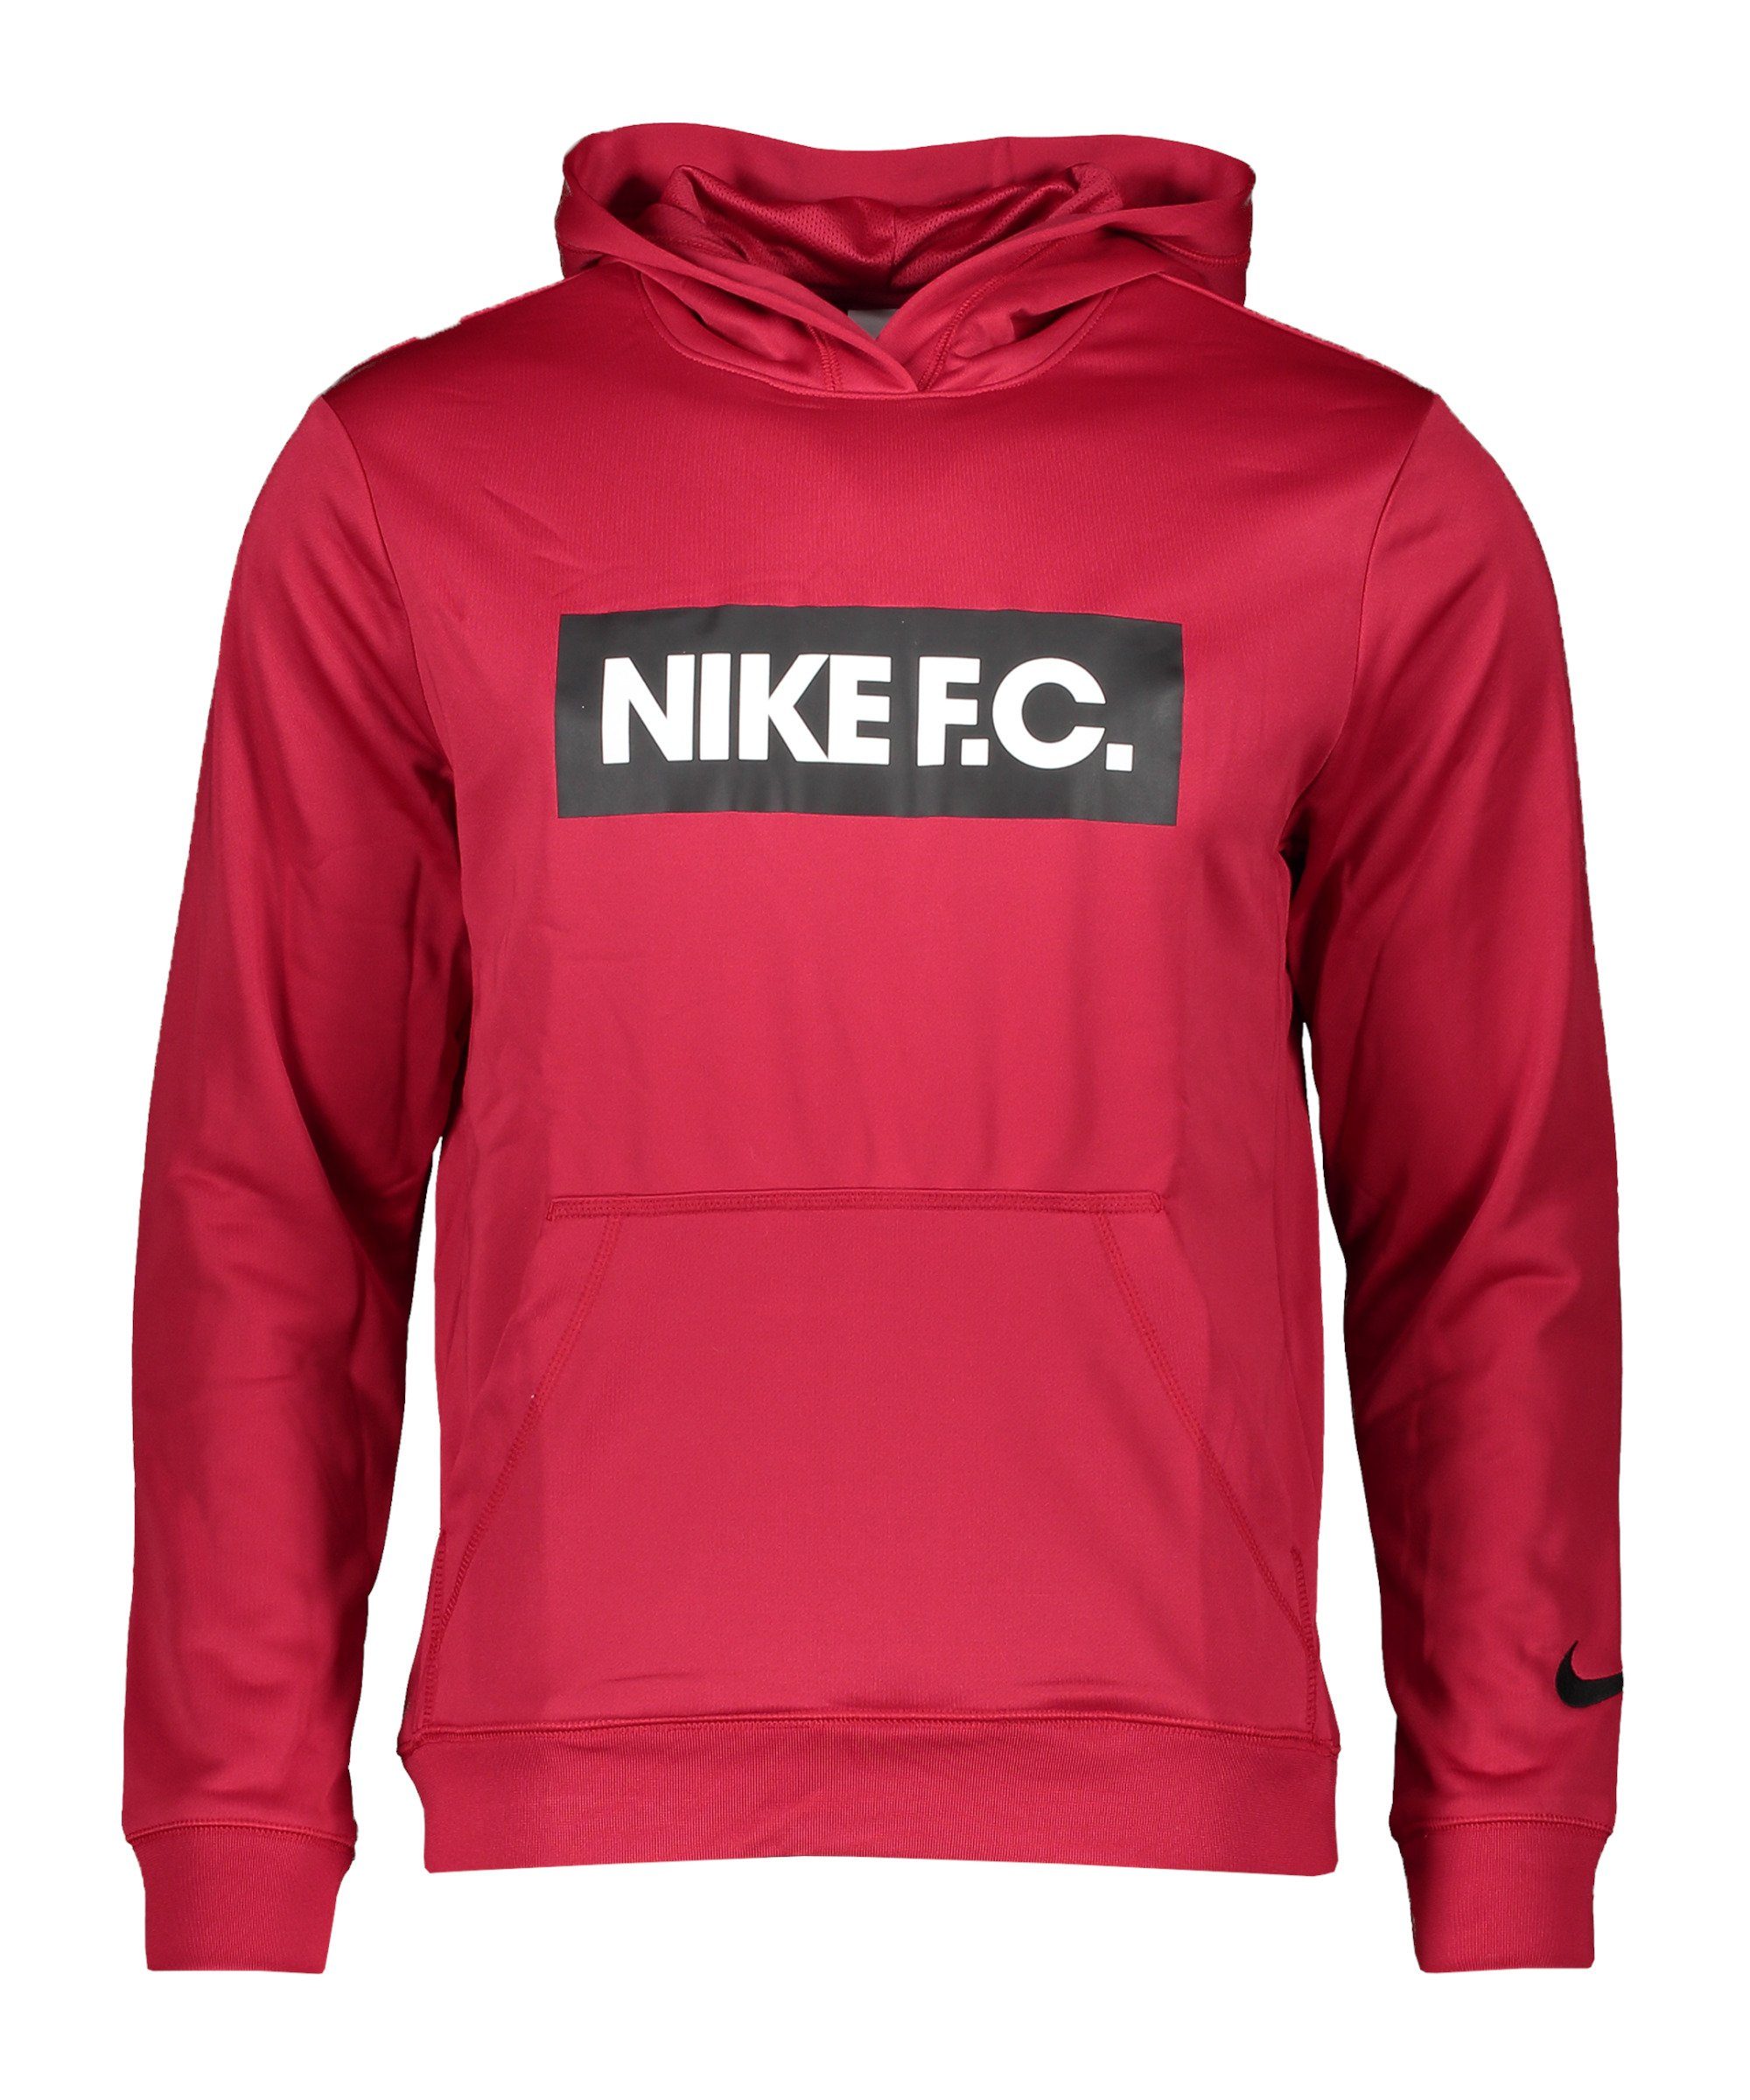 F.C. Fleece Sweatshirt Sportswear Nike pinkschwarzweiss Hoody